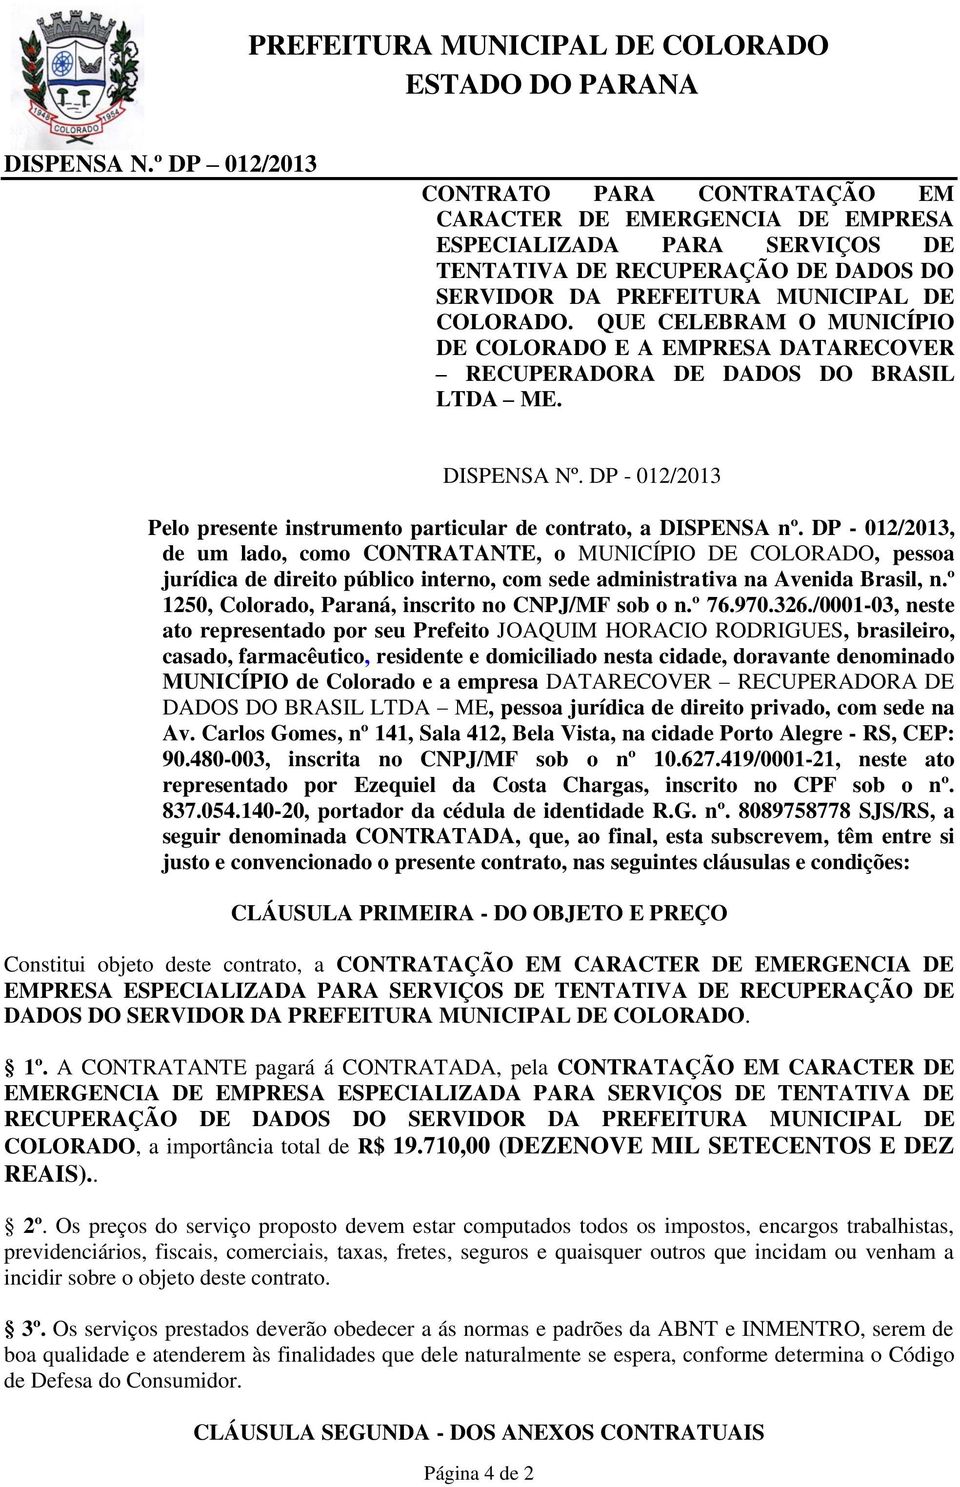 DP - 012/2013, de um lado, como CONTRATANTE, o MUNICÍPIO DE COLORADO, pessoa jurídica de direito público interno, com sede administrativa na Avenida Brasil, n.